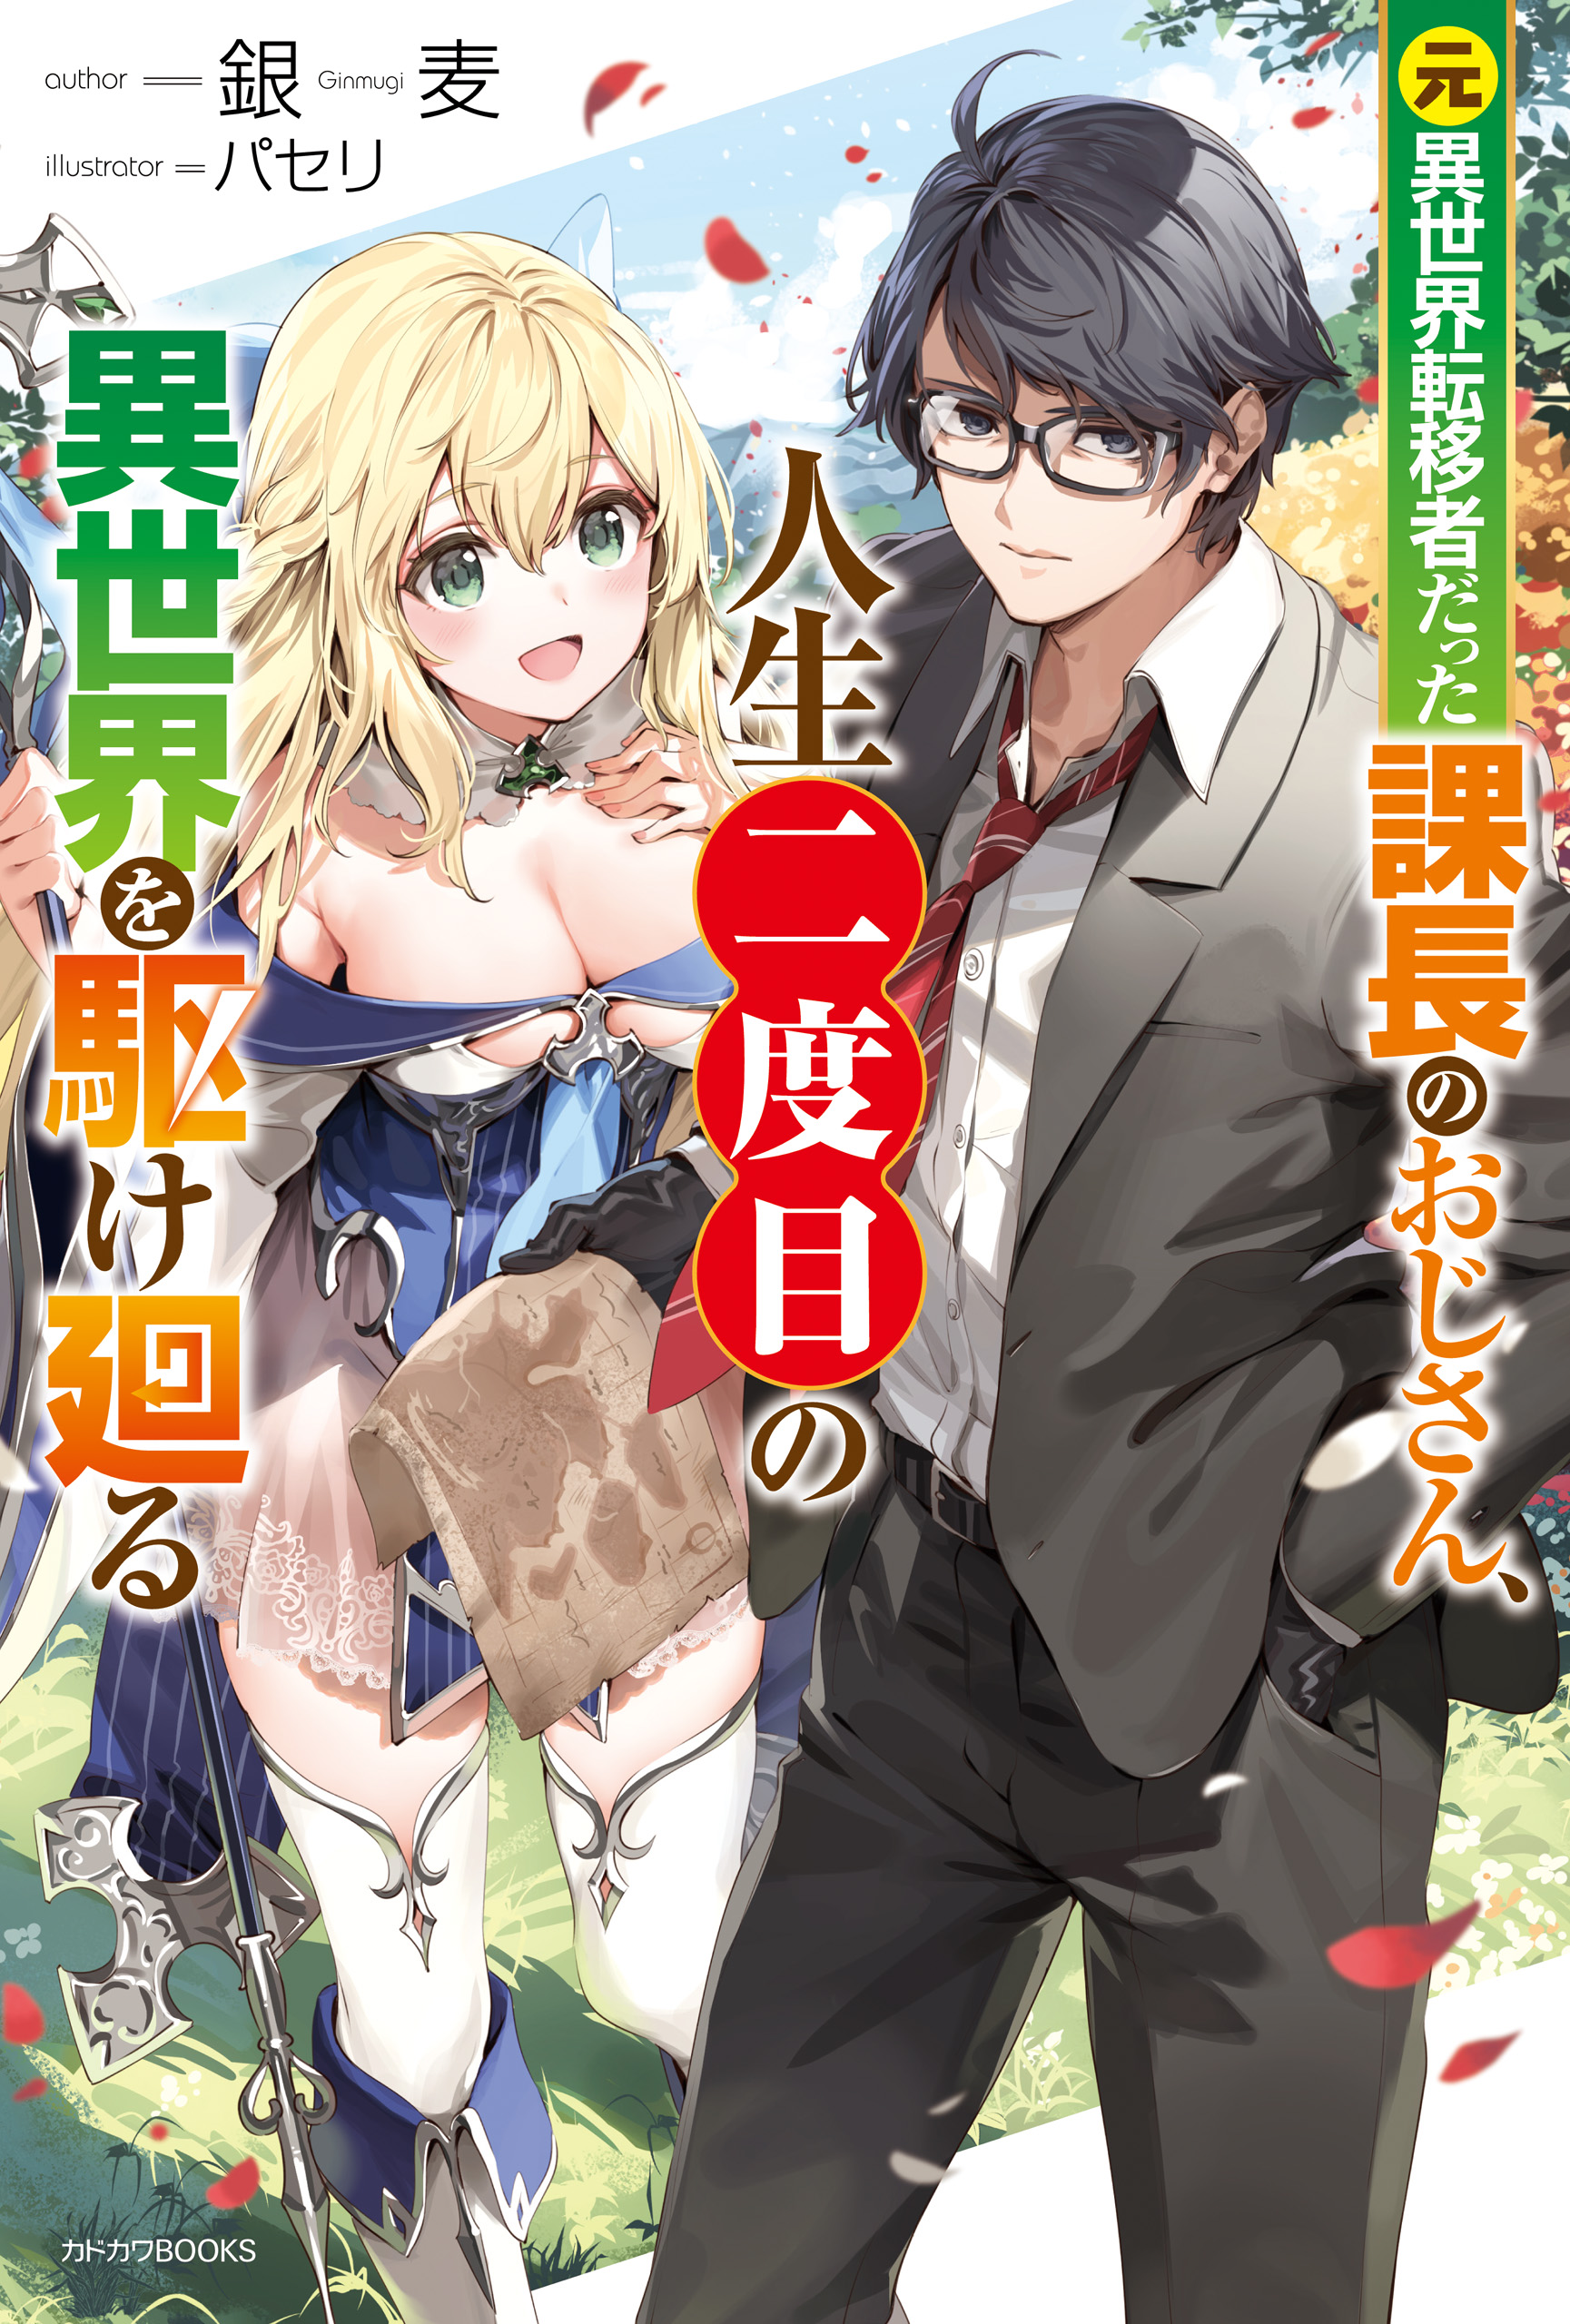 Isekai Ojisan Chapter 41 - Novel Cool - Best online light novel